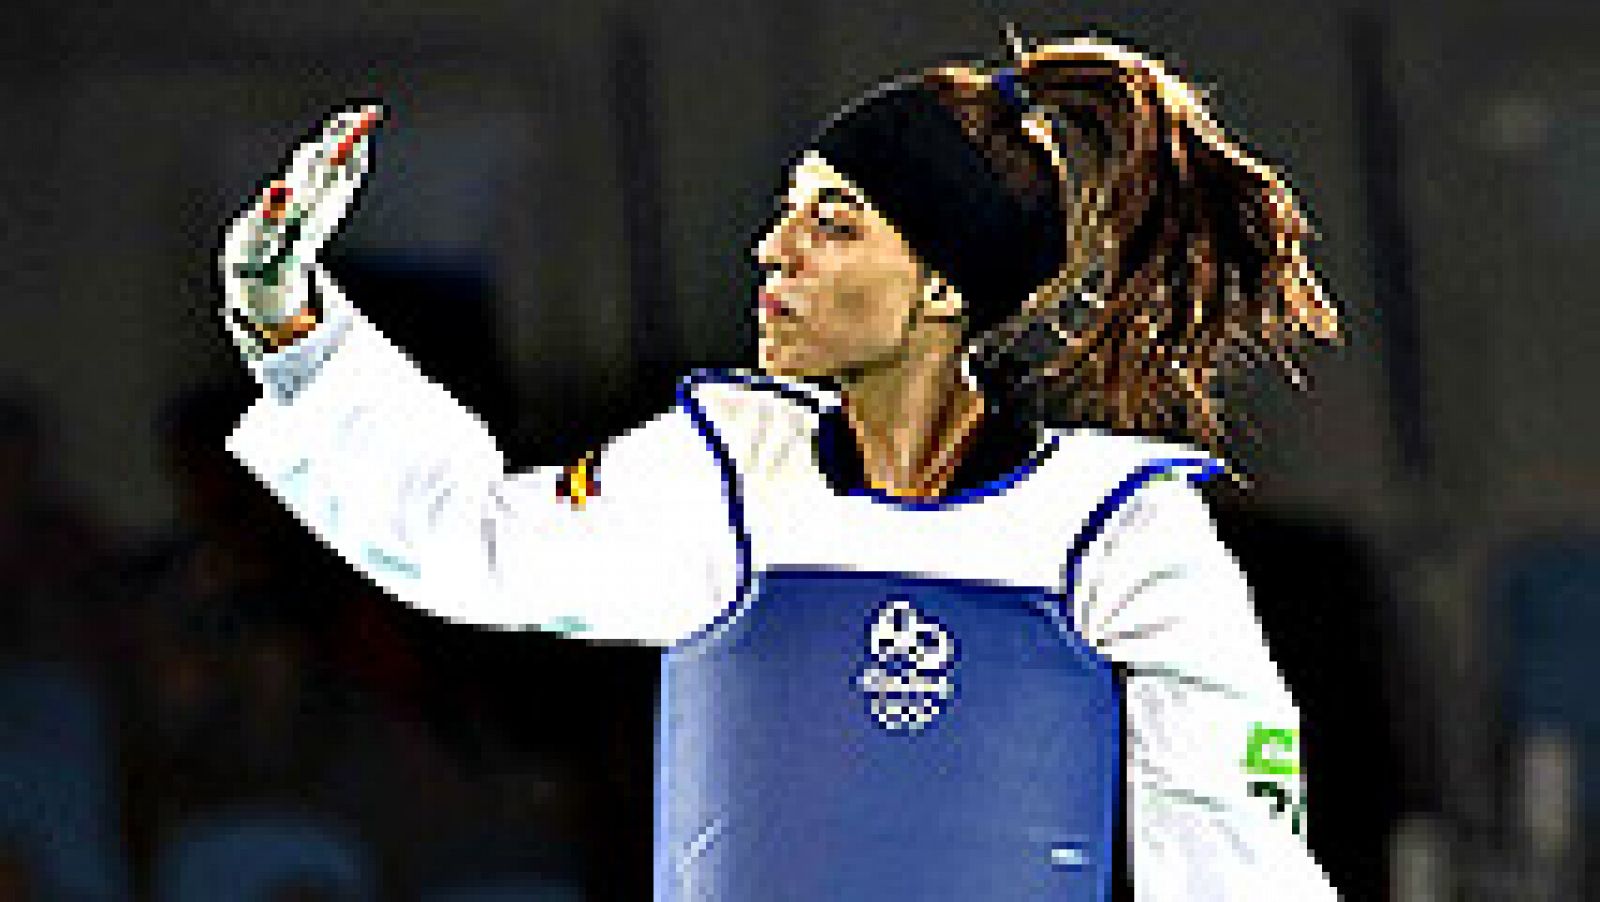 La española Eva Calvo ha sido galardonada con la medalla de plata en la categoría de menos de 57 kilos de taekwondo en los Juegos Olímpicos de Río 2016. La británica Jade Jones se llevó el oro.